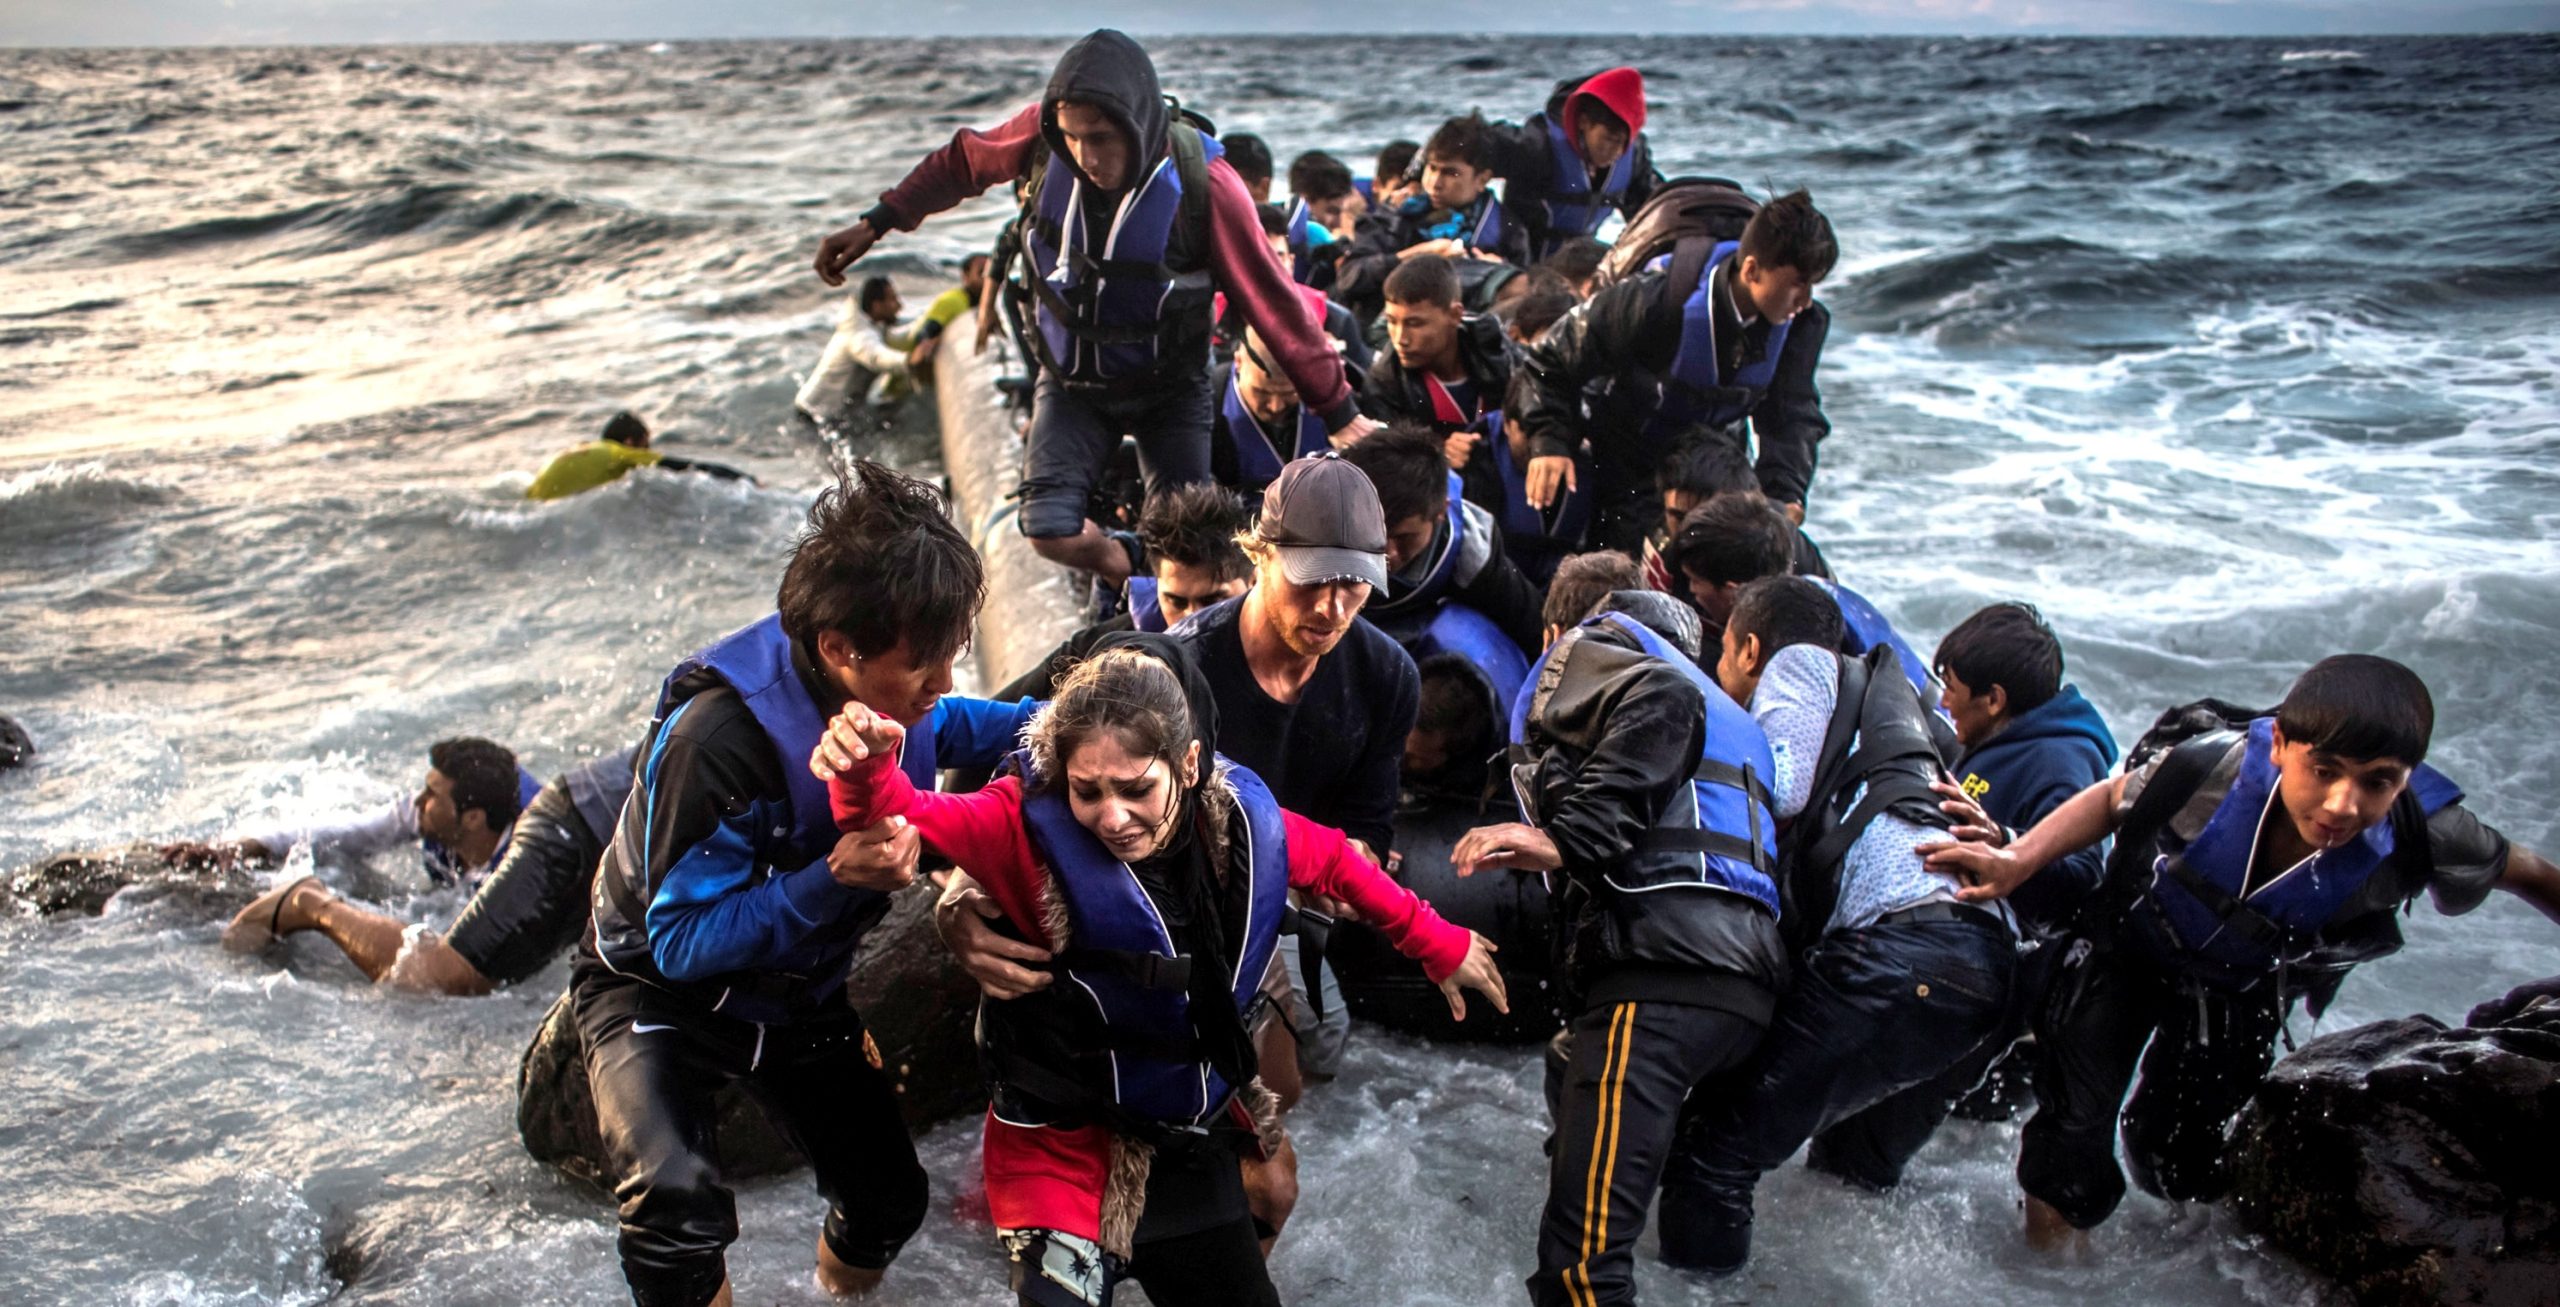 Deutsche Welle: Έρχονται – 120.000 αλλοδαποί στην Τουρκία έτοιμοι για απόβαση  στα ελληνικά παράλια